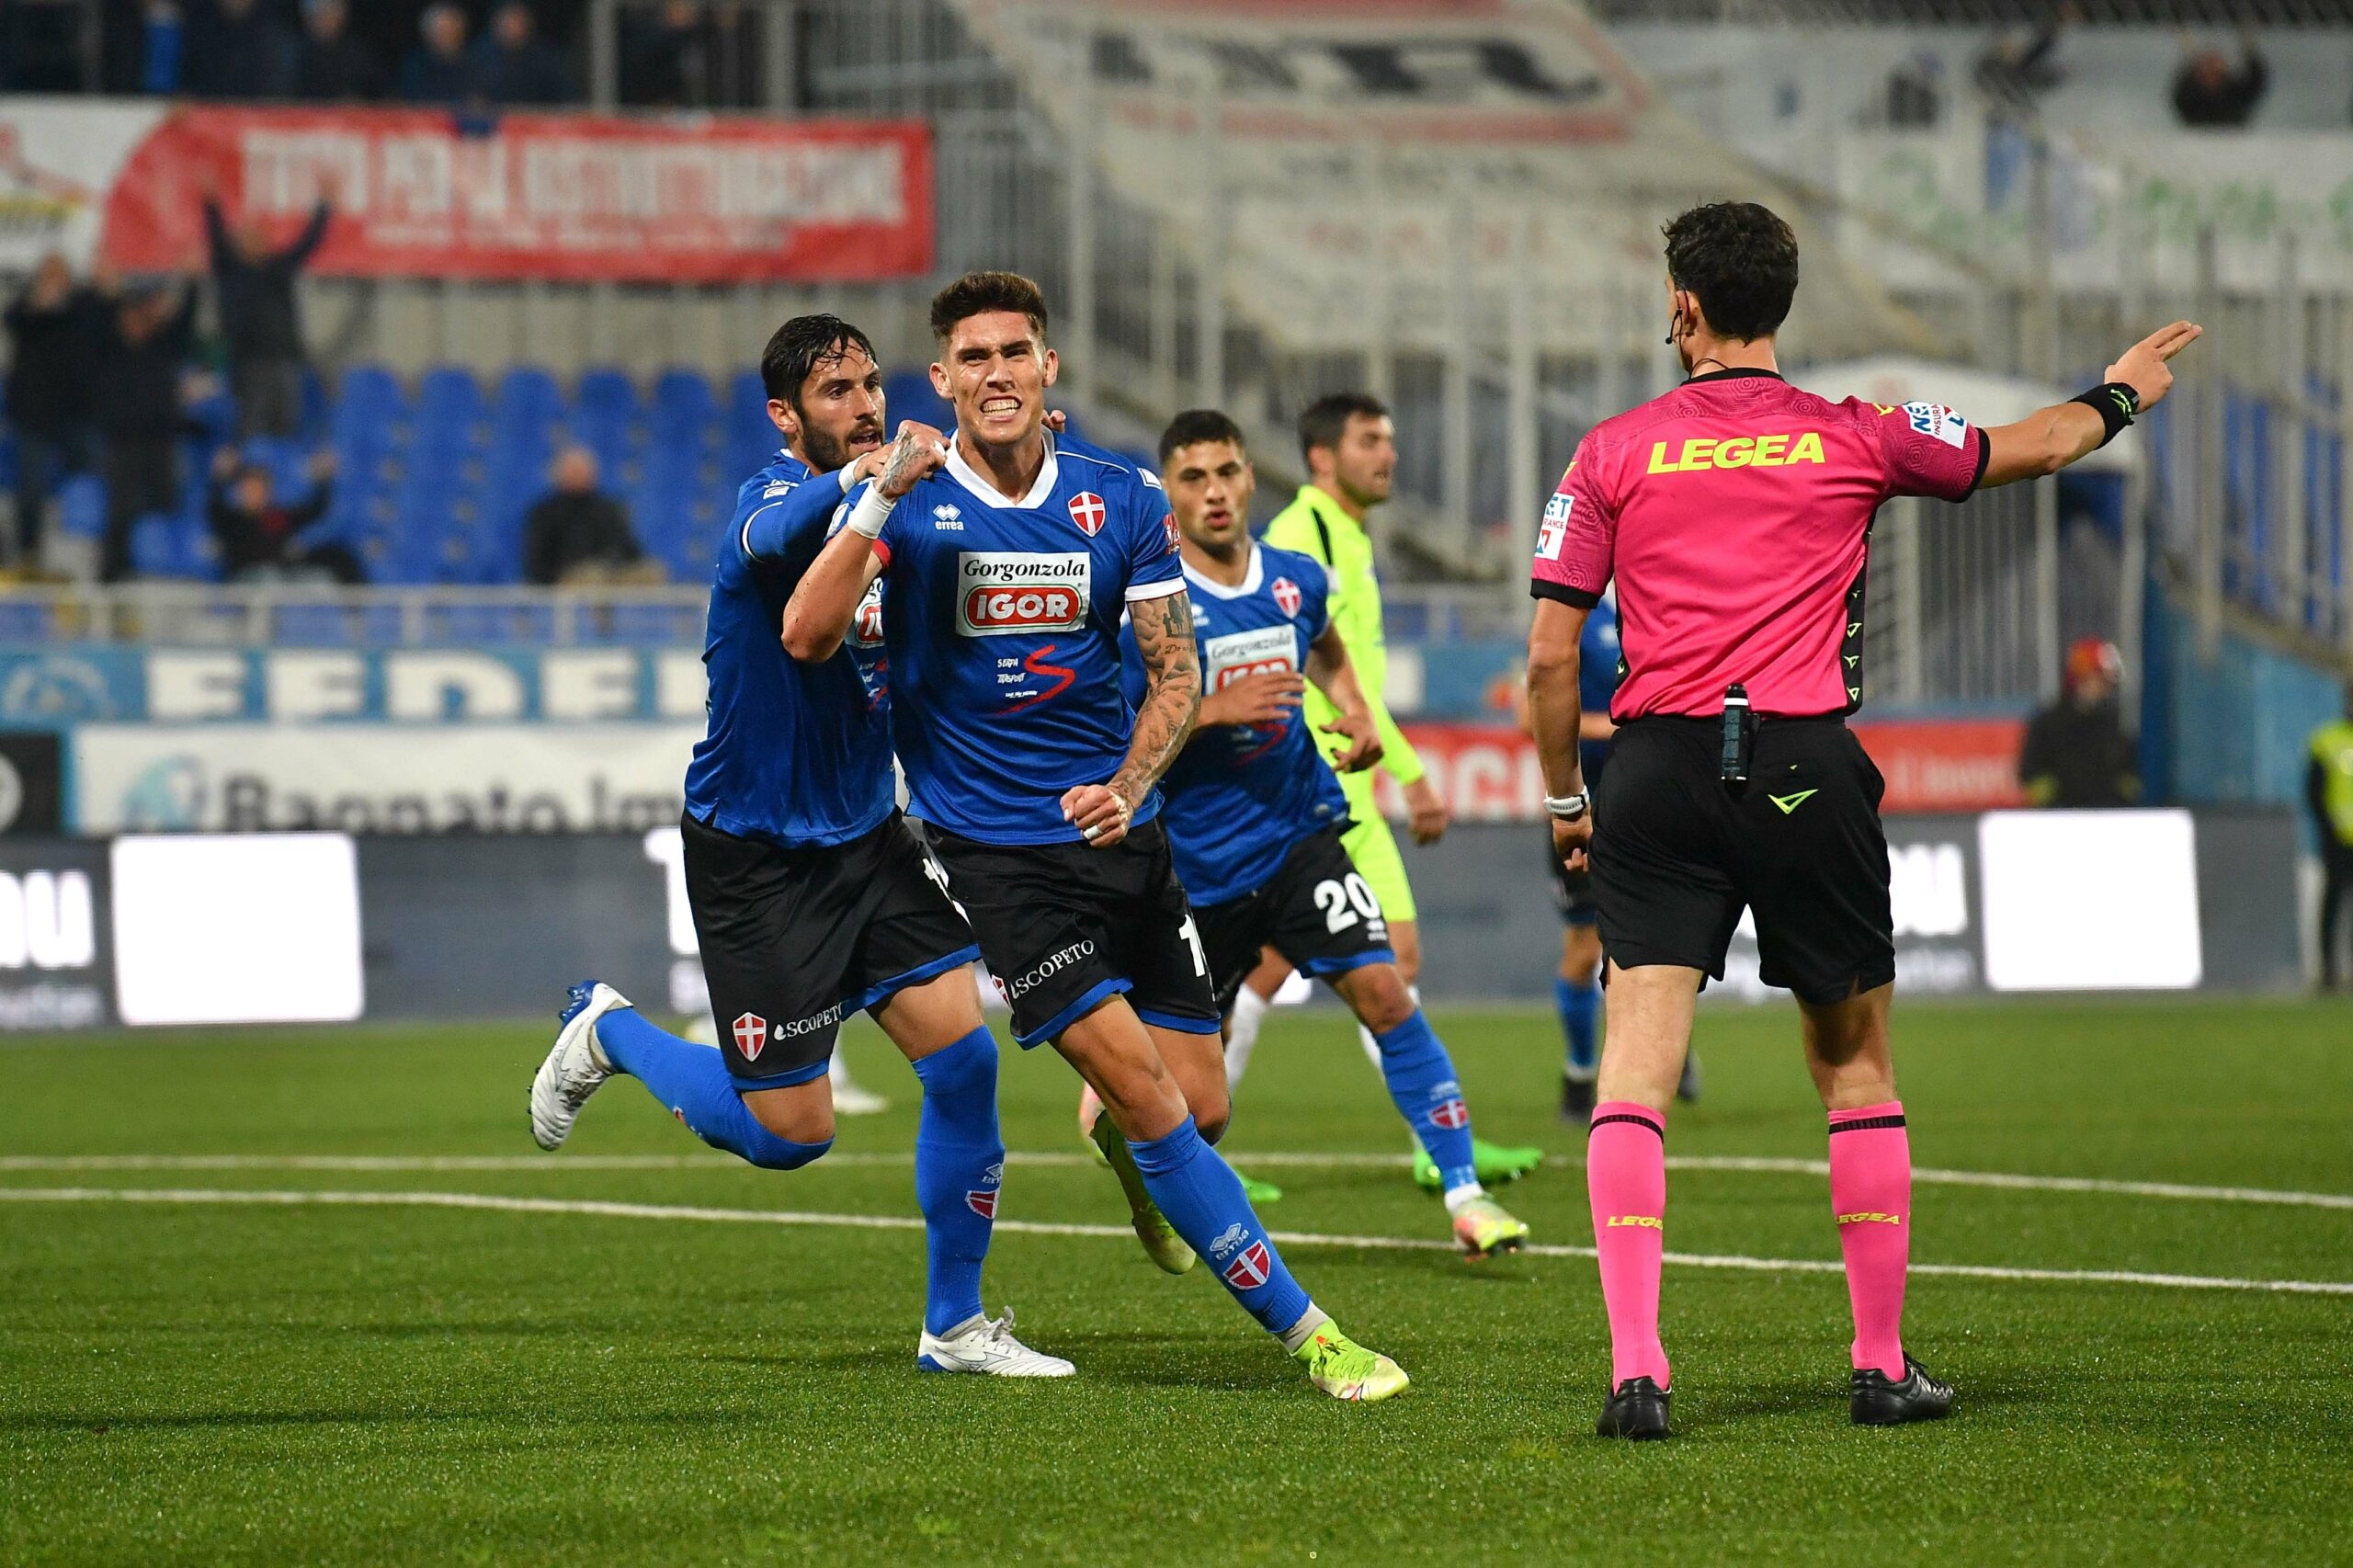 Read more about the article Novara-Pro Patria 1-0 | Il tabellino del match